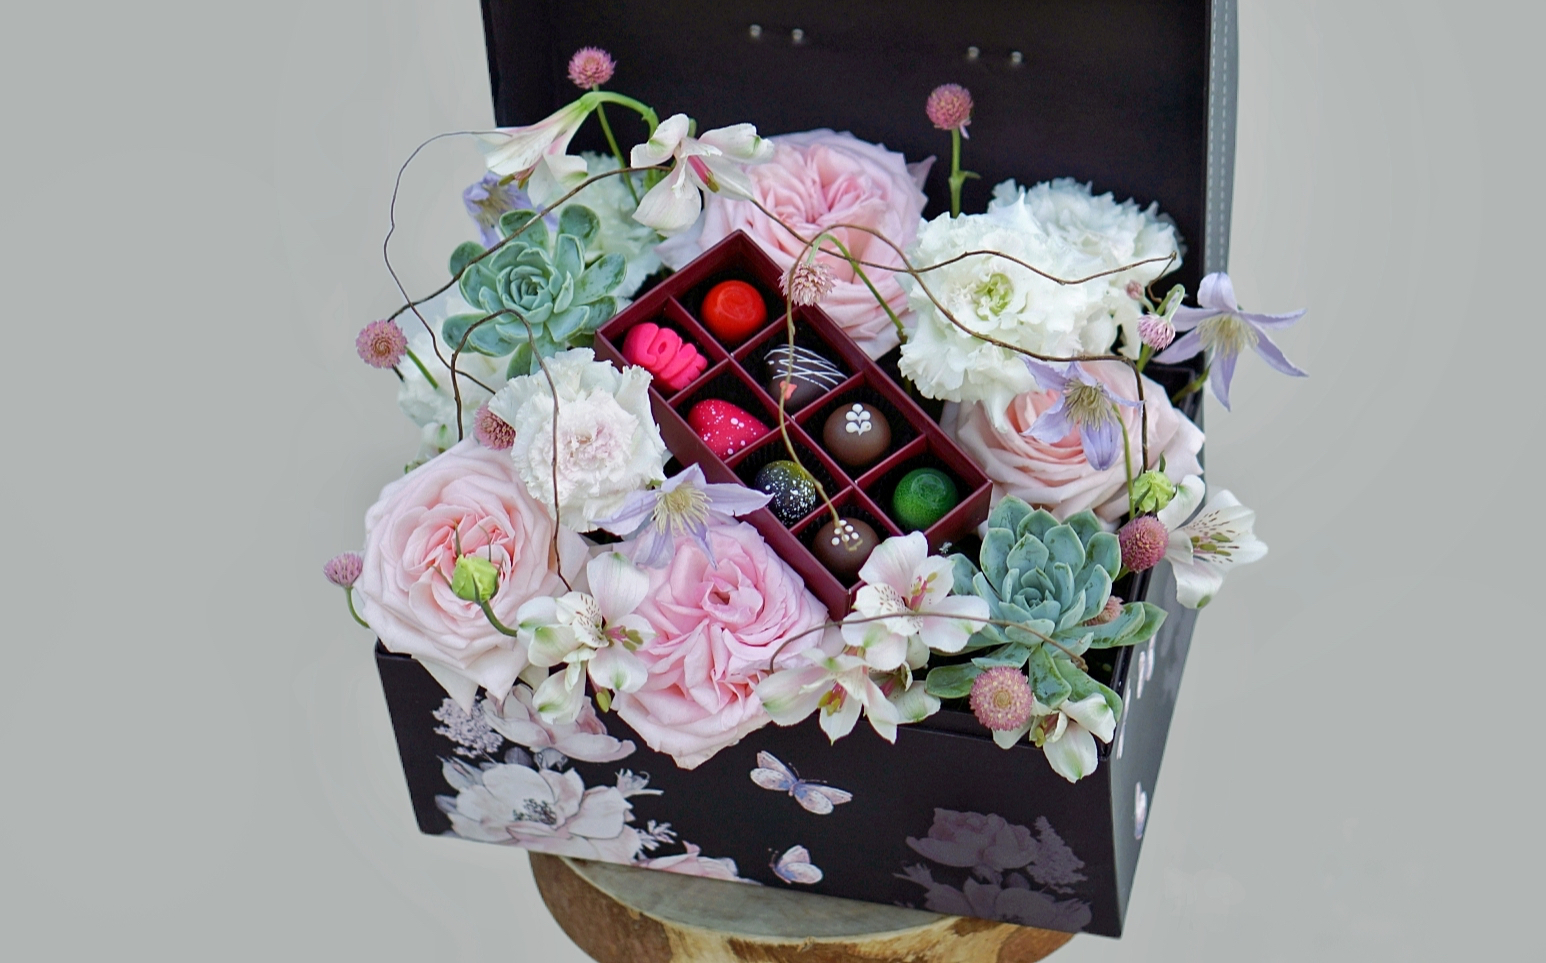 Hoa hồng kết hợp chocolate lạ mắt, đắt khách trước lễ Tình nhân 14/2 - Ảnh 2.